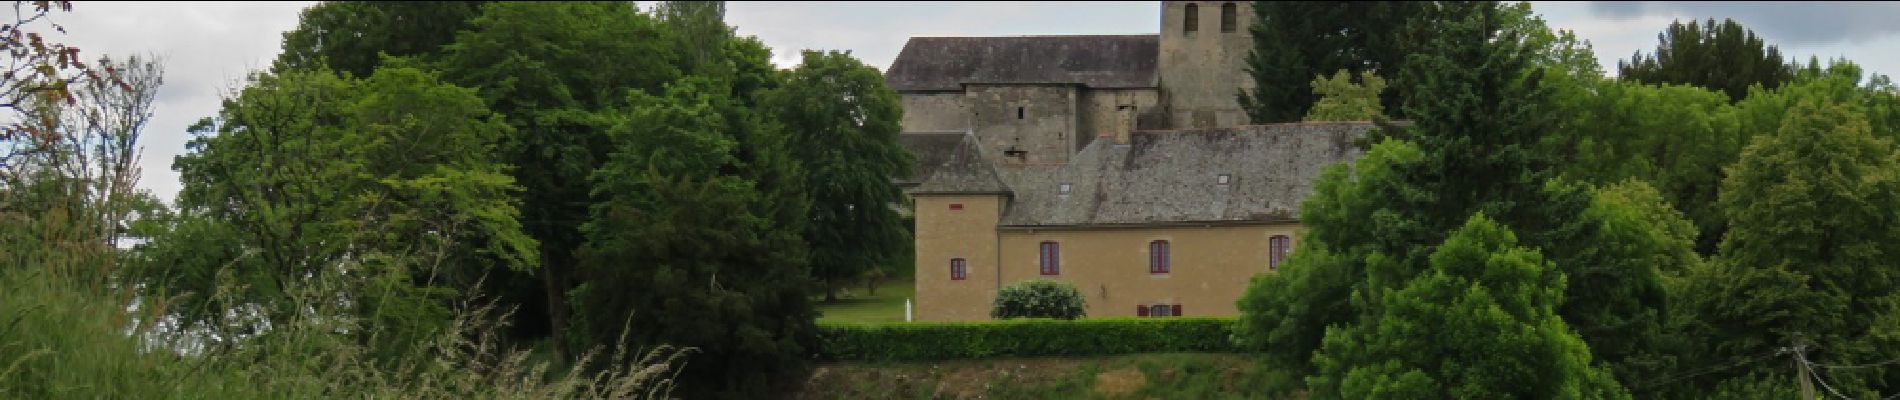 Tocht Stappen Sadroc - Sadroc- Moulin de la chapelle - Photo